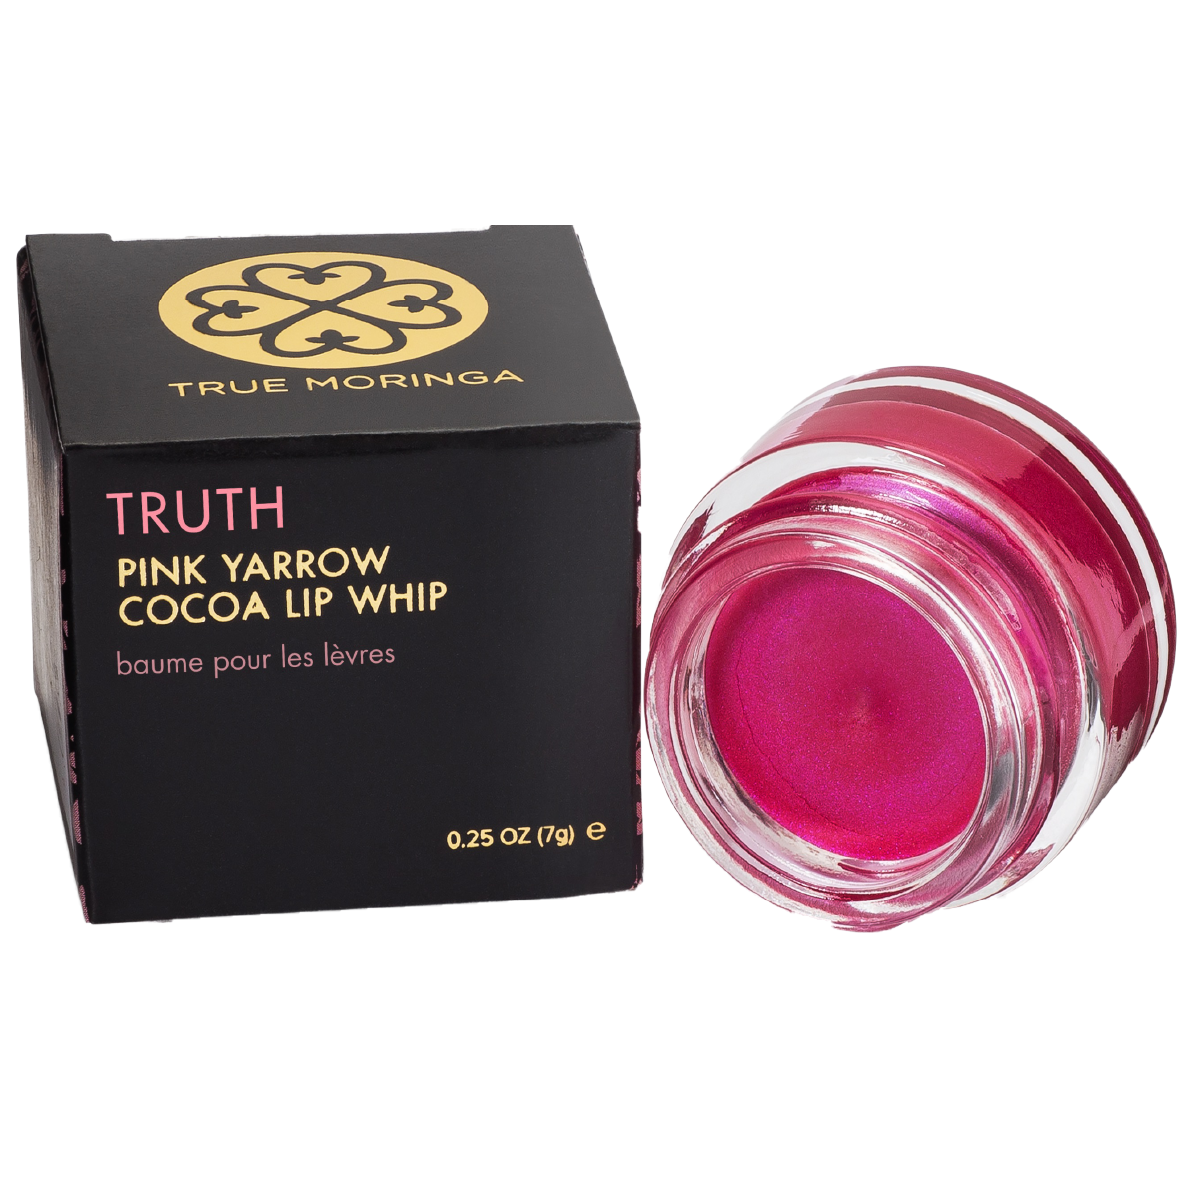 Truth (Pink Yarrow Cocoa) Lip Whip 0.25 oz - True Moringa